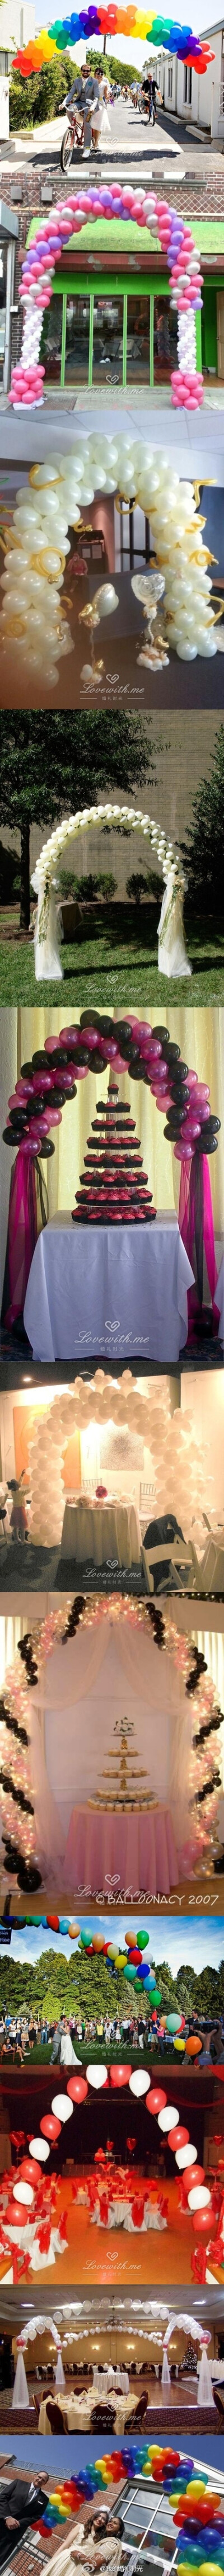 #婚礼布置# 婚礼现场创意布置之气球拱门，希望为你们的婚礼带来不一样的效果~http://www.lovewith.me/share/detail/26993/all